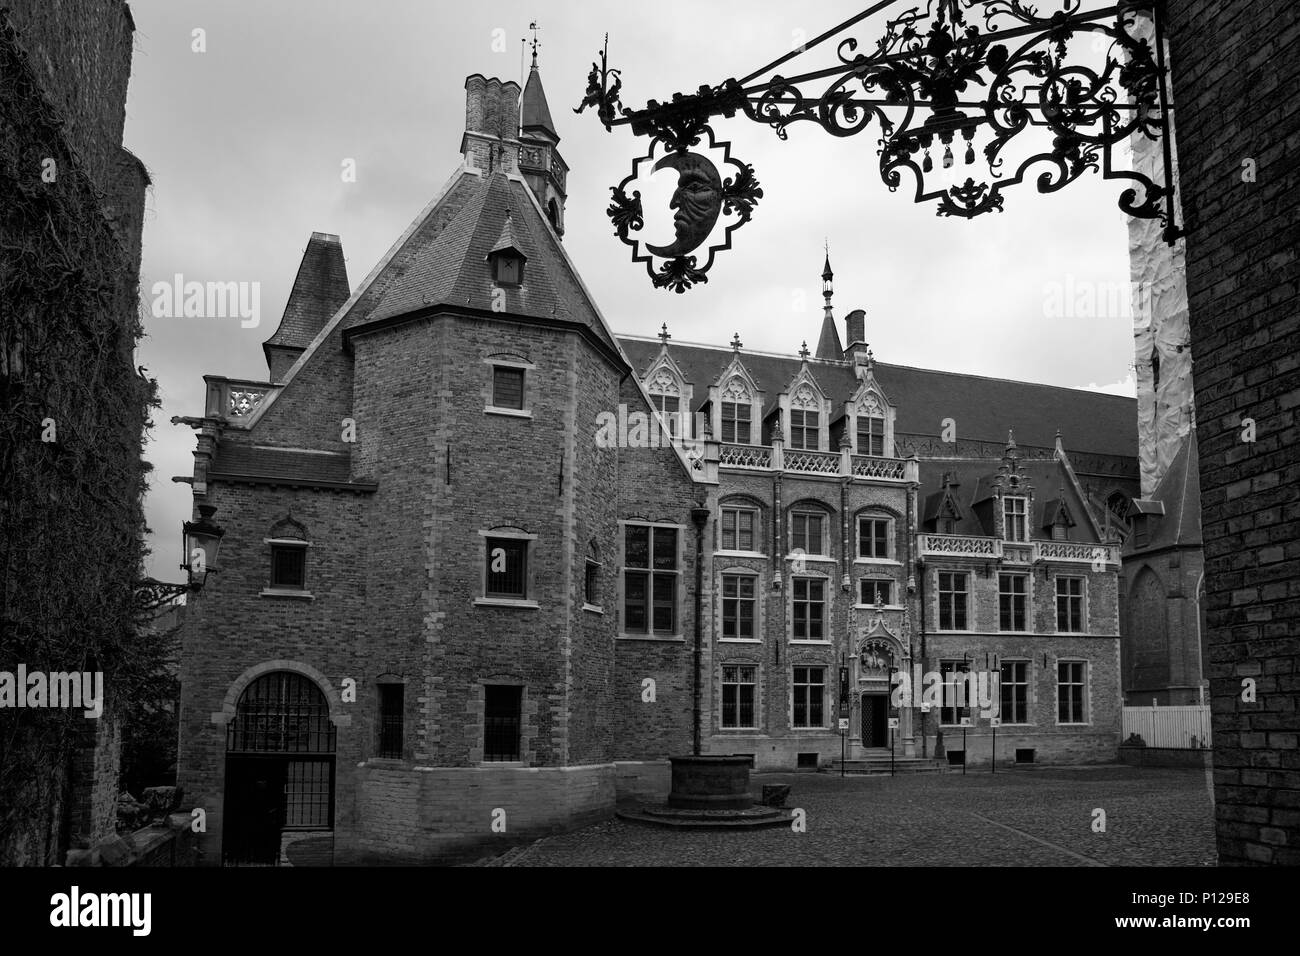 Rejas elaboradas con media luna sobre la entrada del palacio Gruuthuse, Brujas, Bélgica: versión en blanco y negro Foto de stock